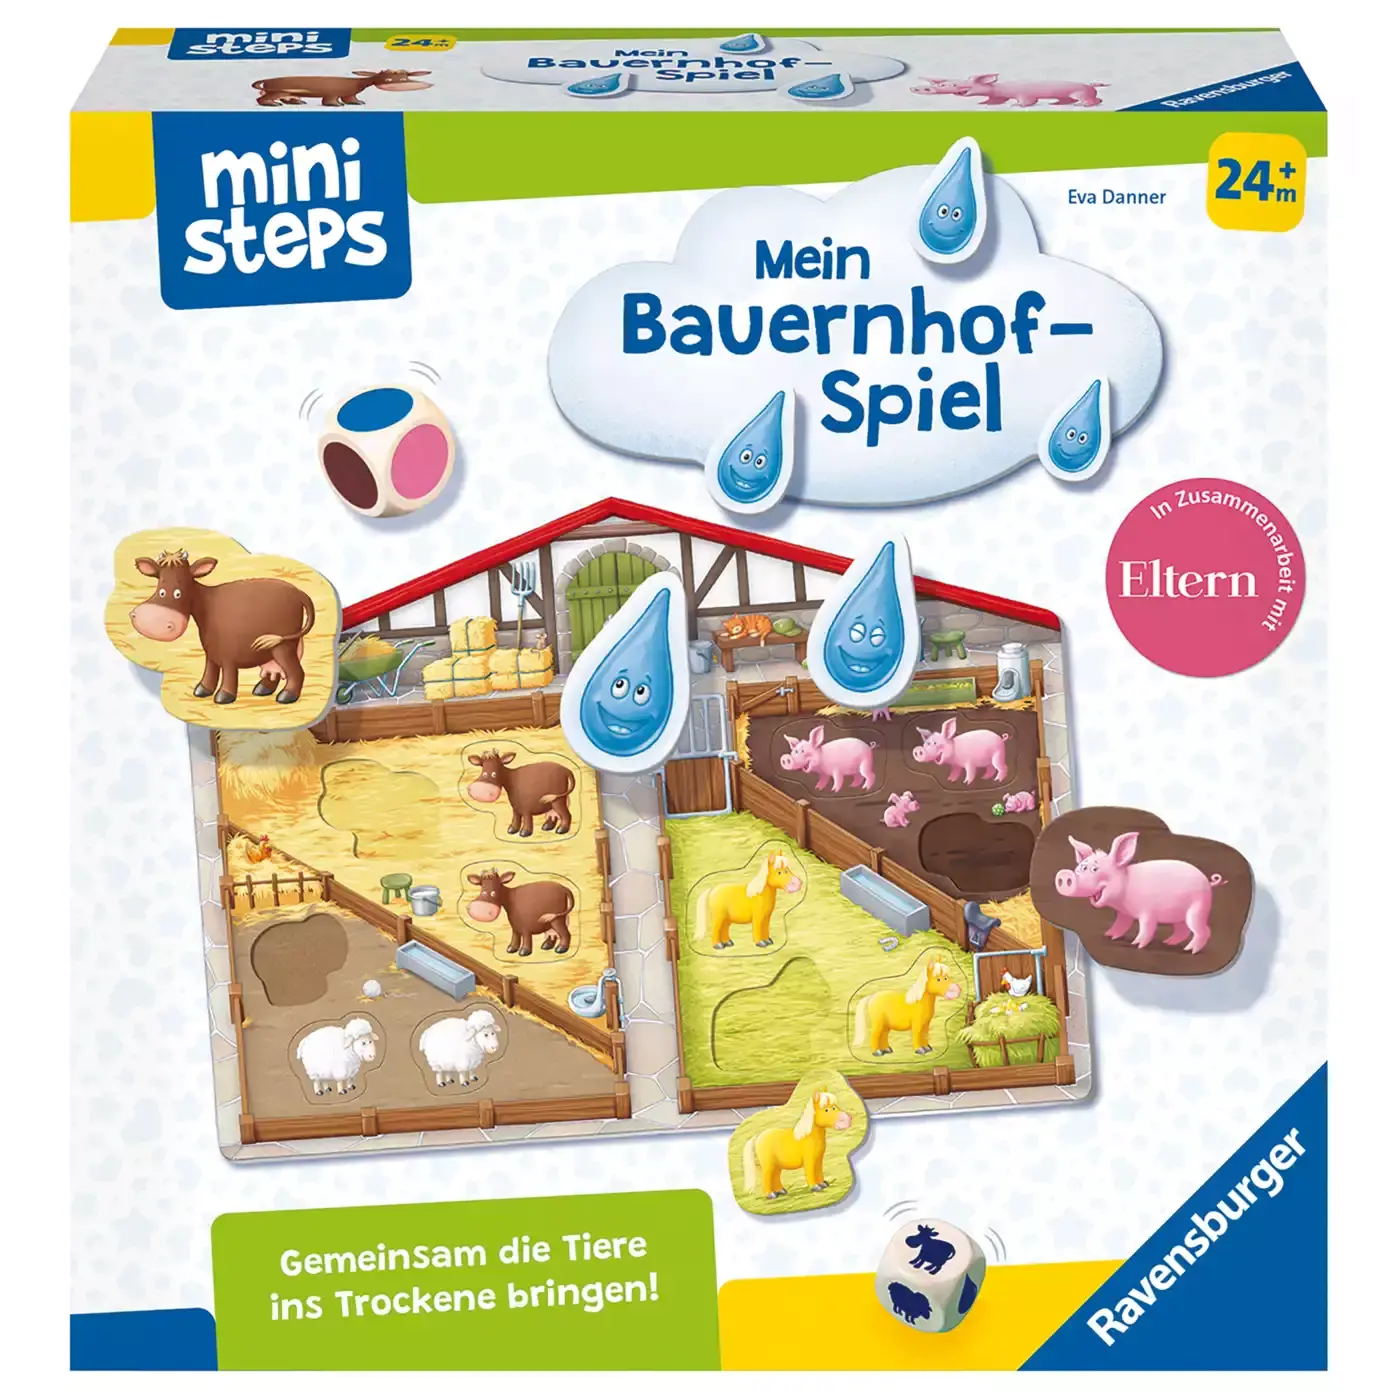 Mini Steps Mein Bauernhof-Spiel Ravensburger 2000579698309 3